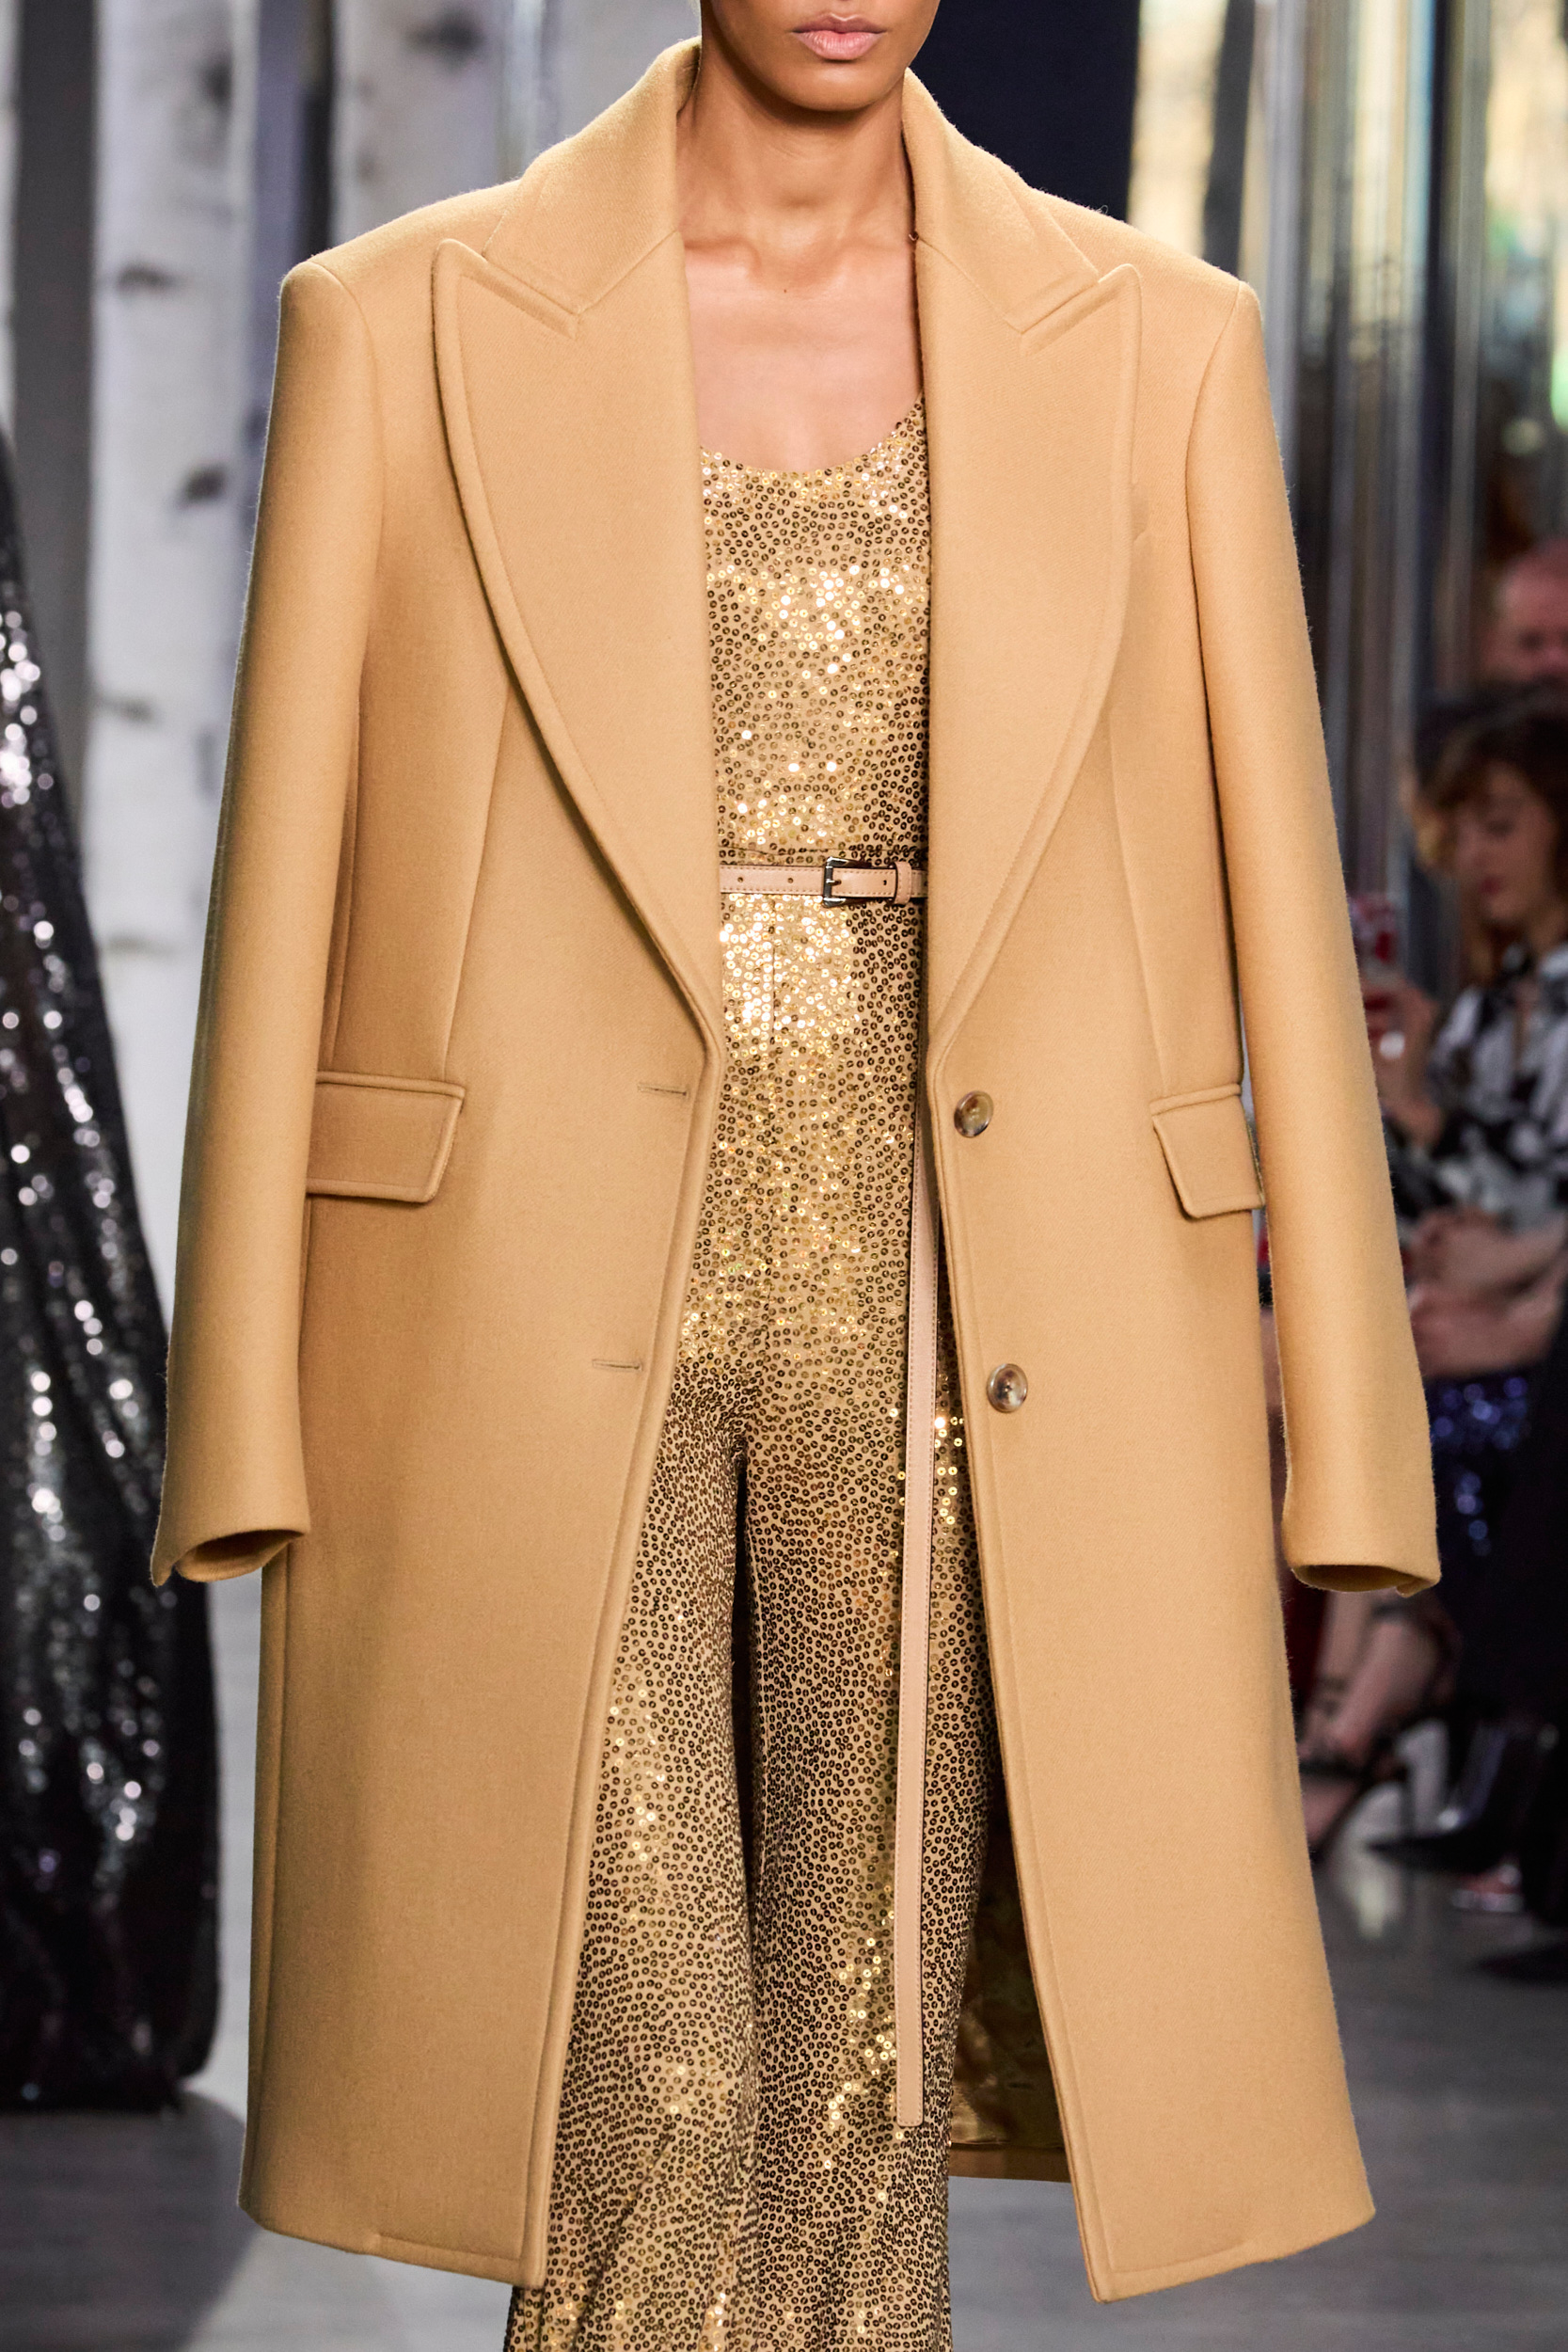 Michael Kors Fall 2023 Fashion Show Details